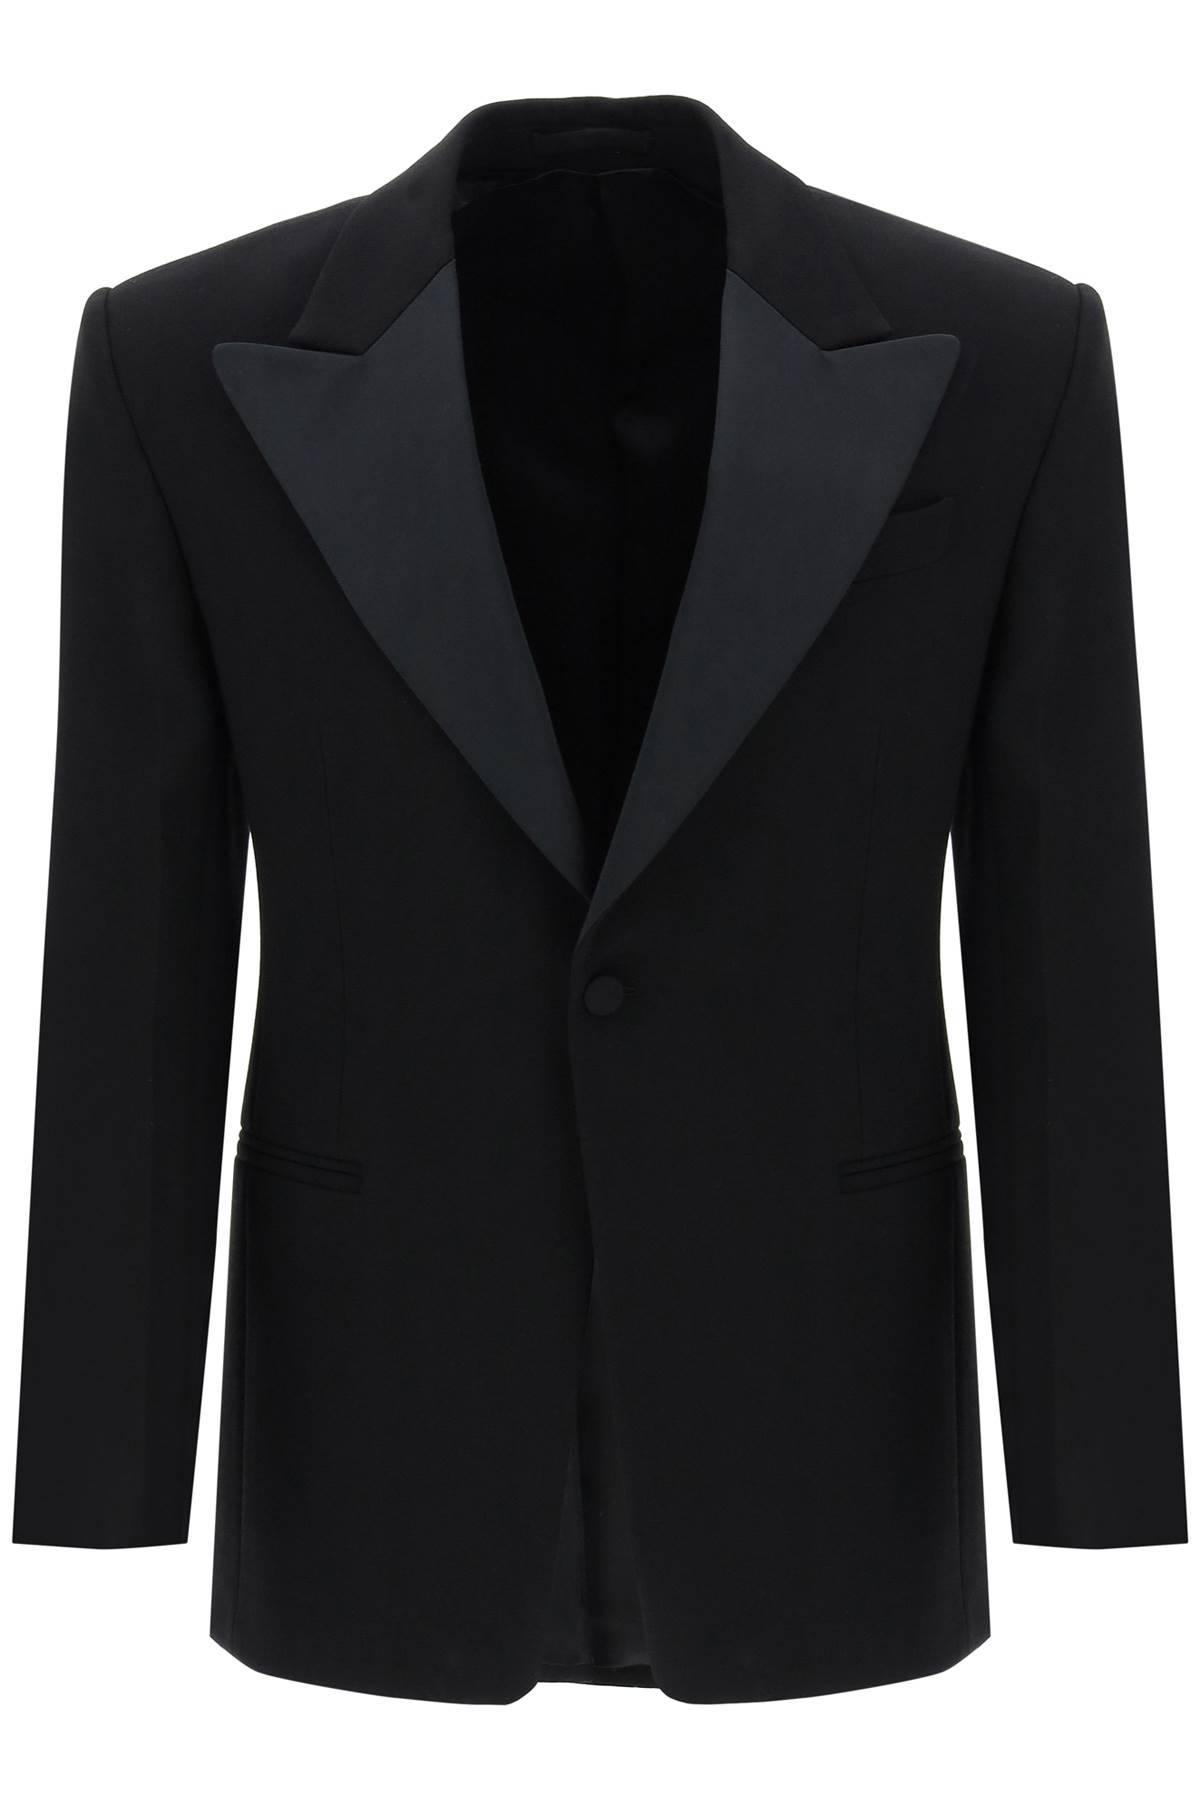 FERRAGAMO single-breasted tuxedo blazer